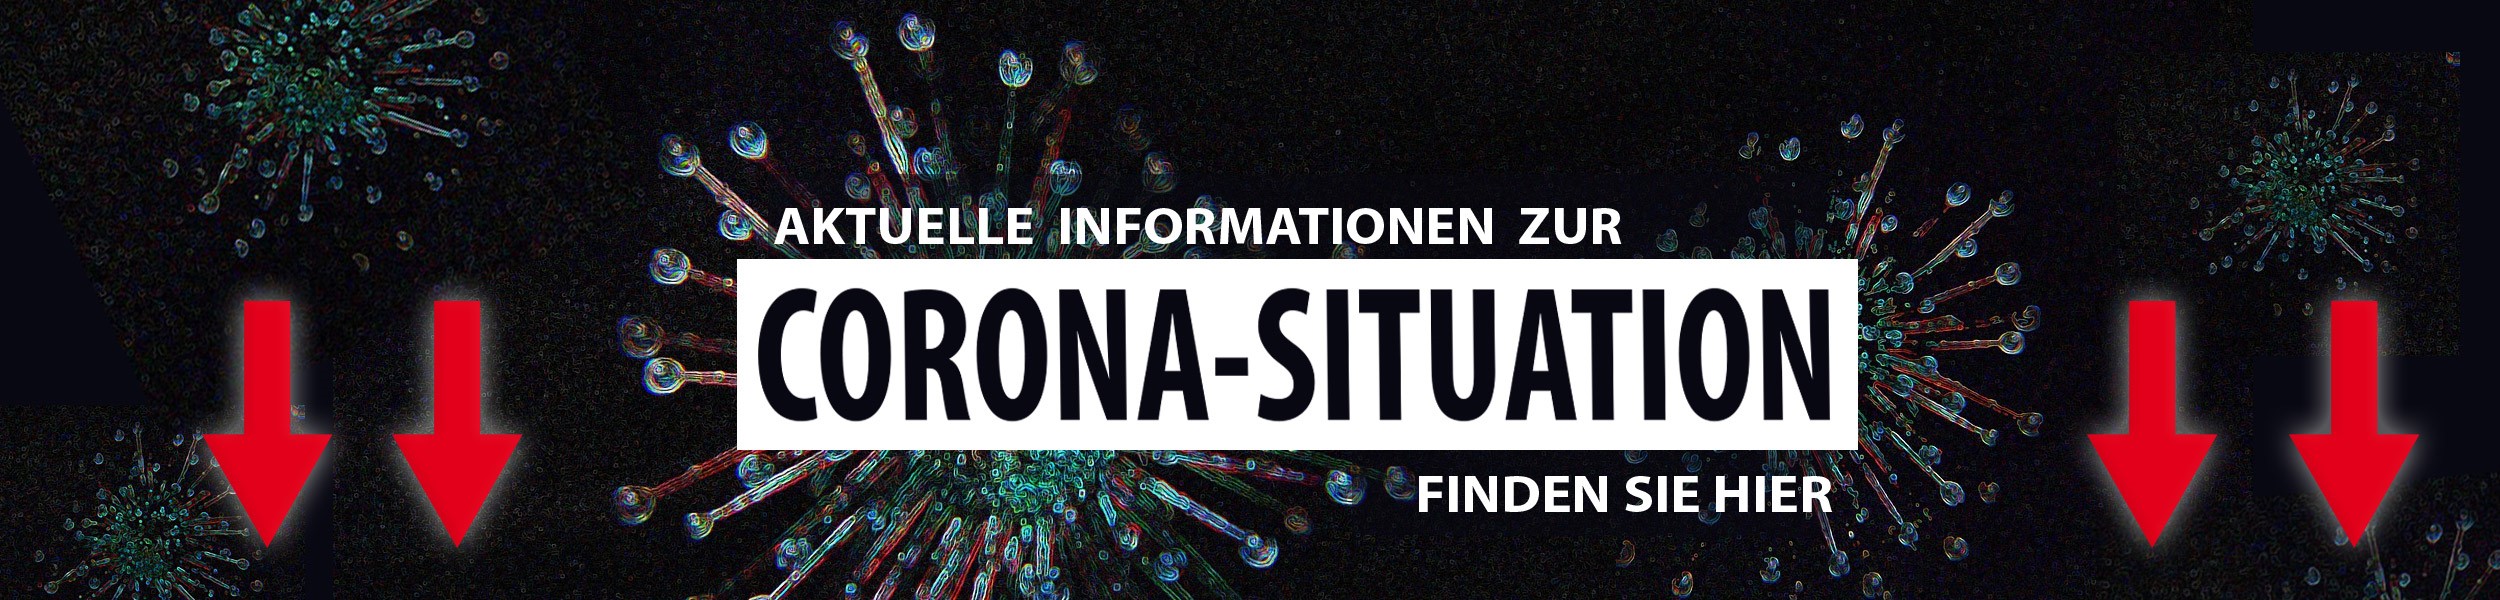 Informationen zur aktuellen Corona-Situation in Elzach